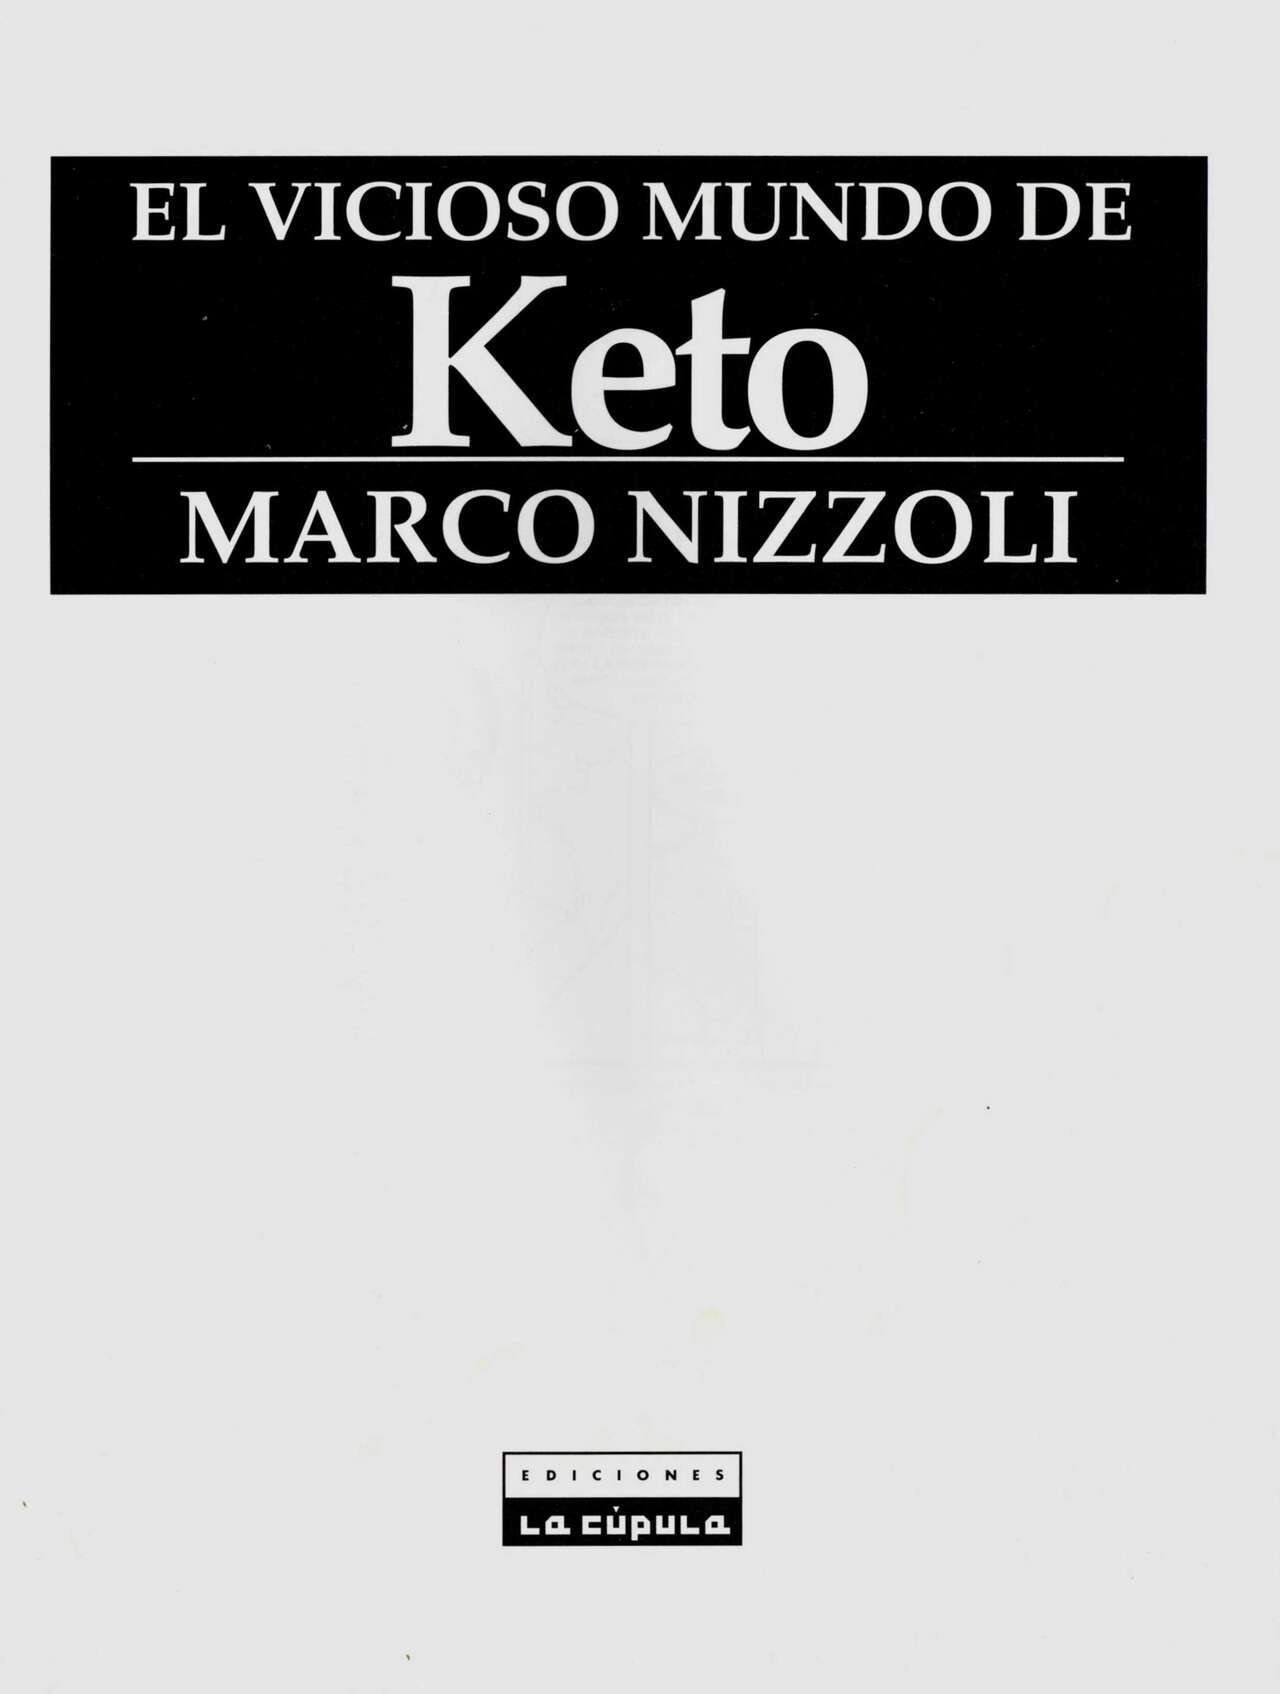 [Collections X (Marco Nizzoli)] El vicioso mundo de Keto [Spanish] 2